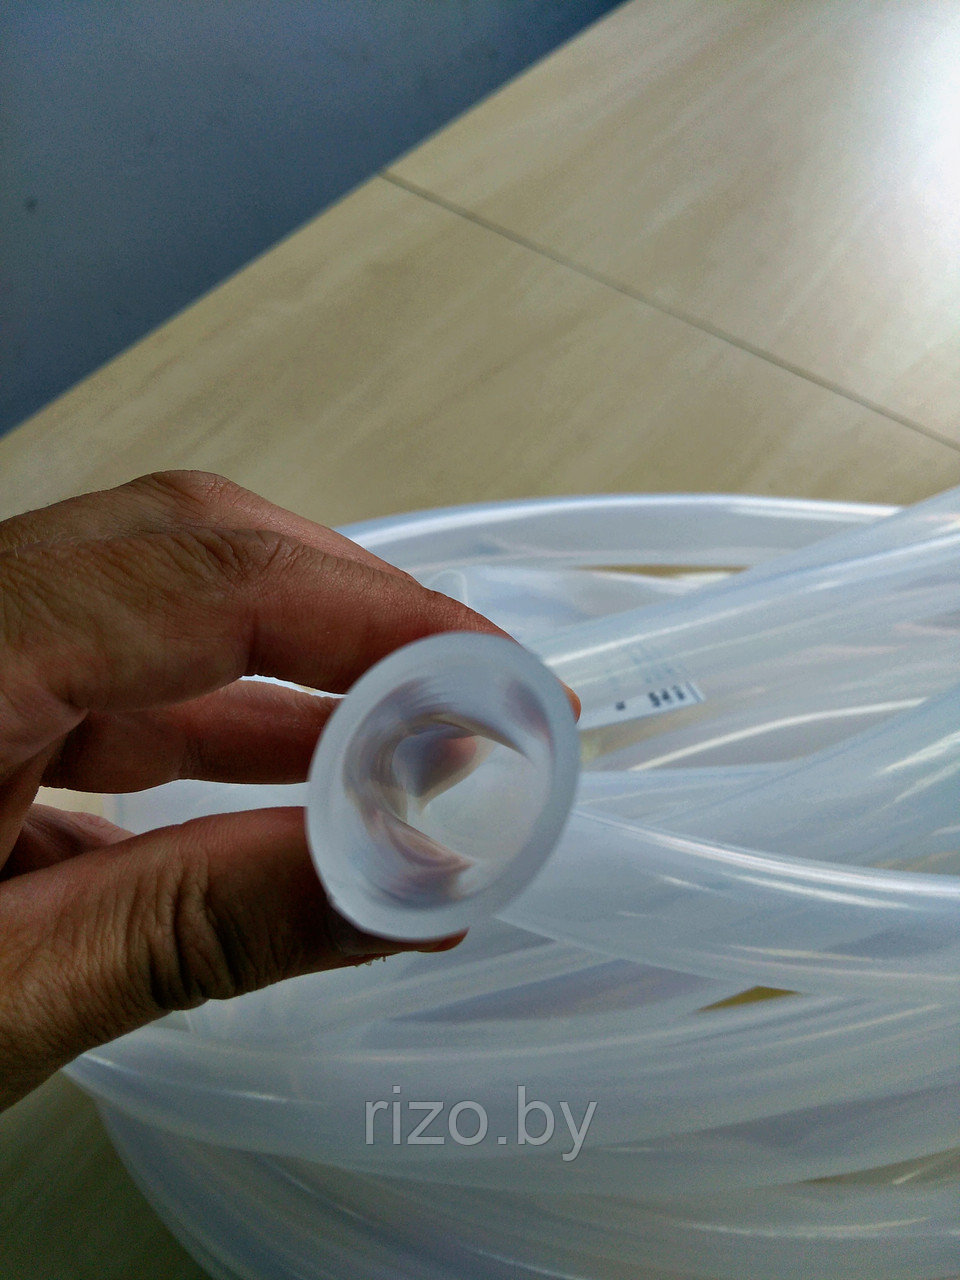 Молочный резиновый шланг диаметром 17, 18, 20, 24, 25, 32 мм, фото 1